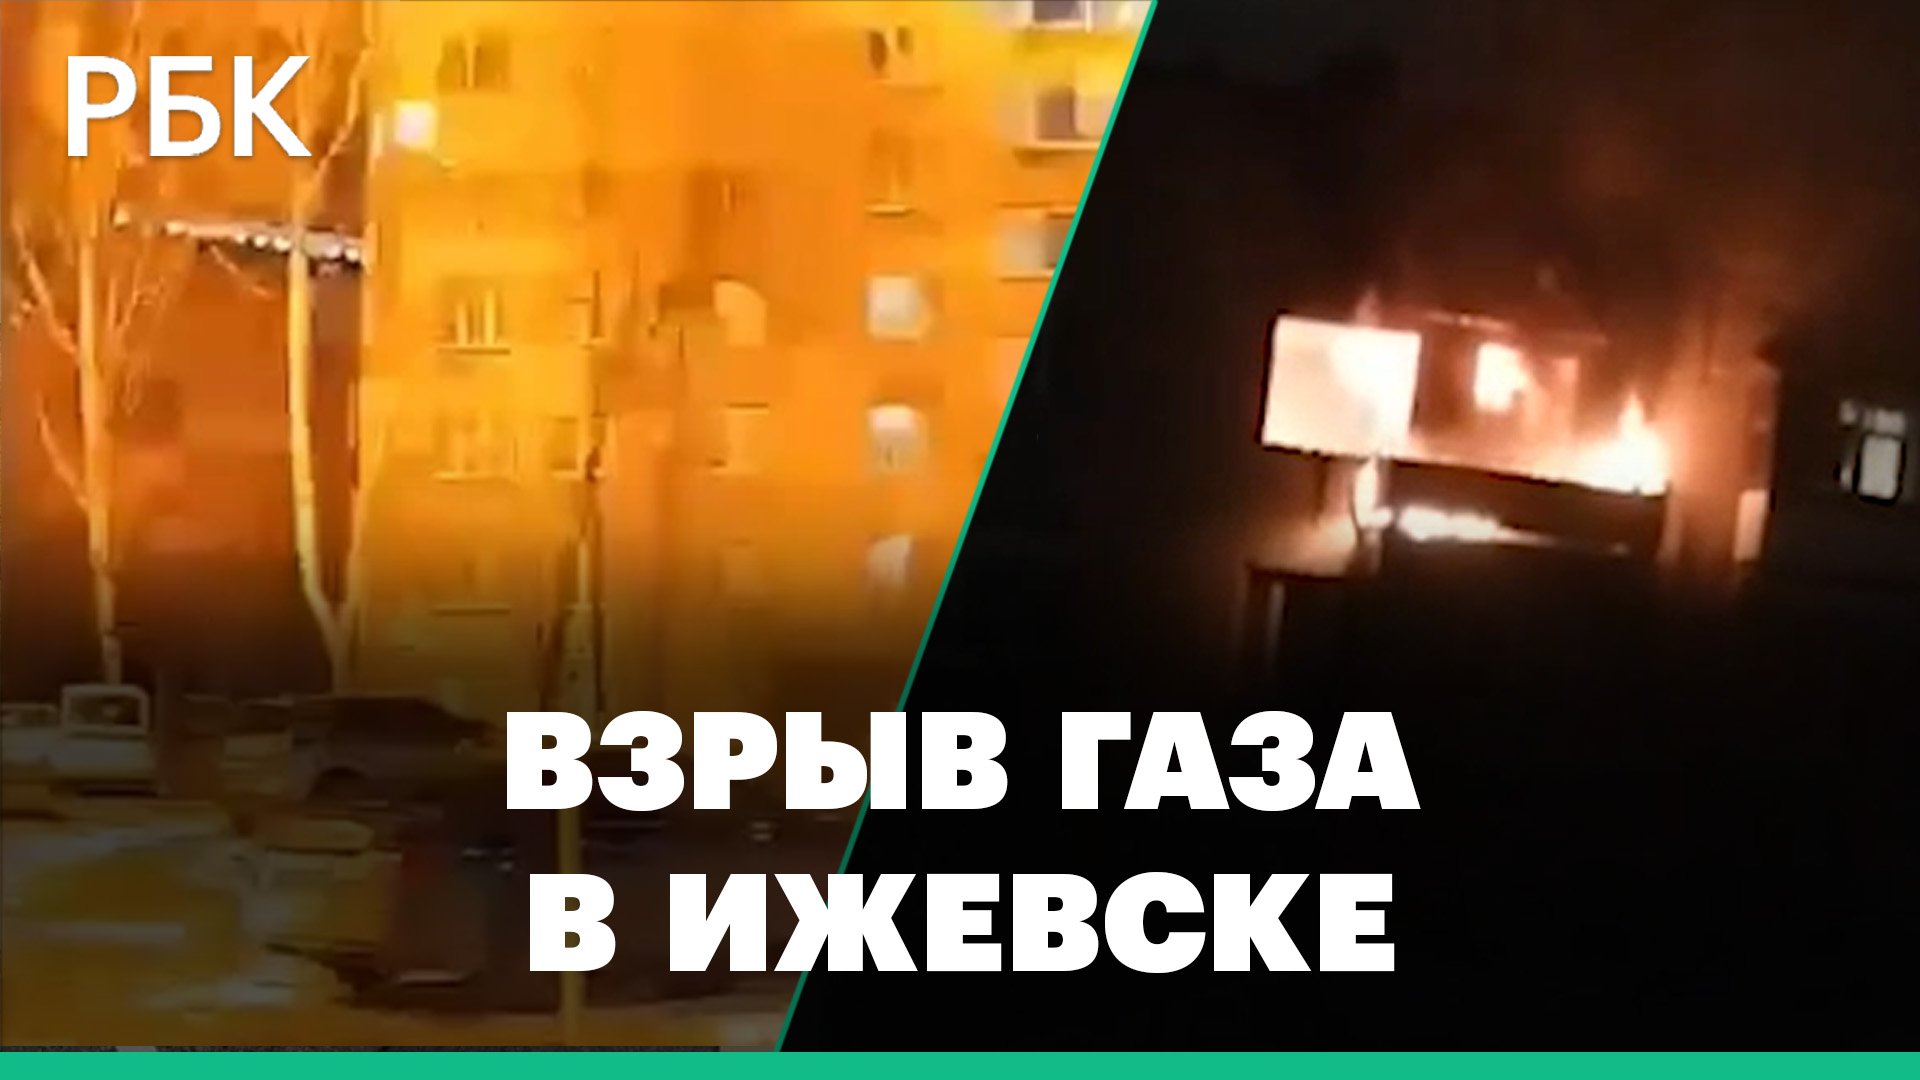 Момент взрыва бытового газа и пожар в жилом доме в Ижевске. Видео очевидцев